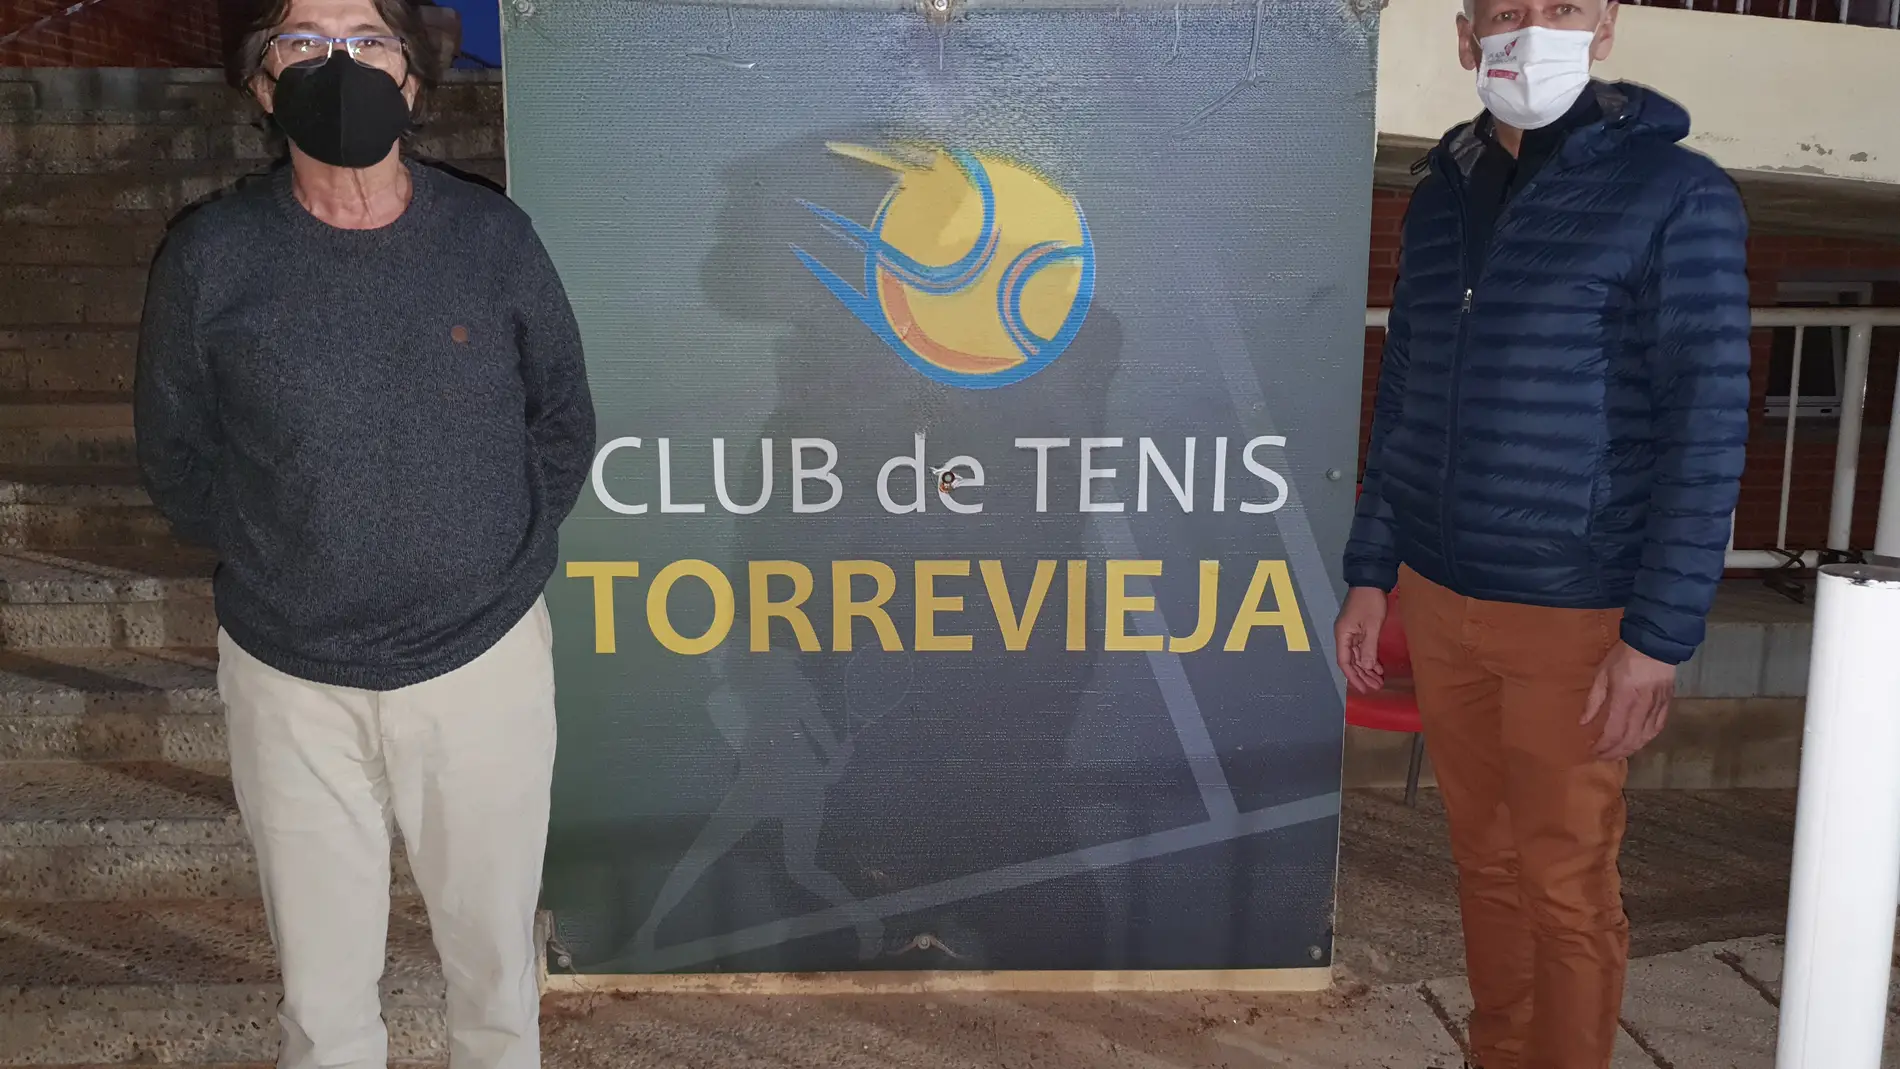 Tras el periodo electoral y por aclamación Igor Vinokurov es el nuevo presidente del Club de Tenis tras la renuncia de Antonio Tafalla a presentarse a la reelección 